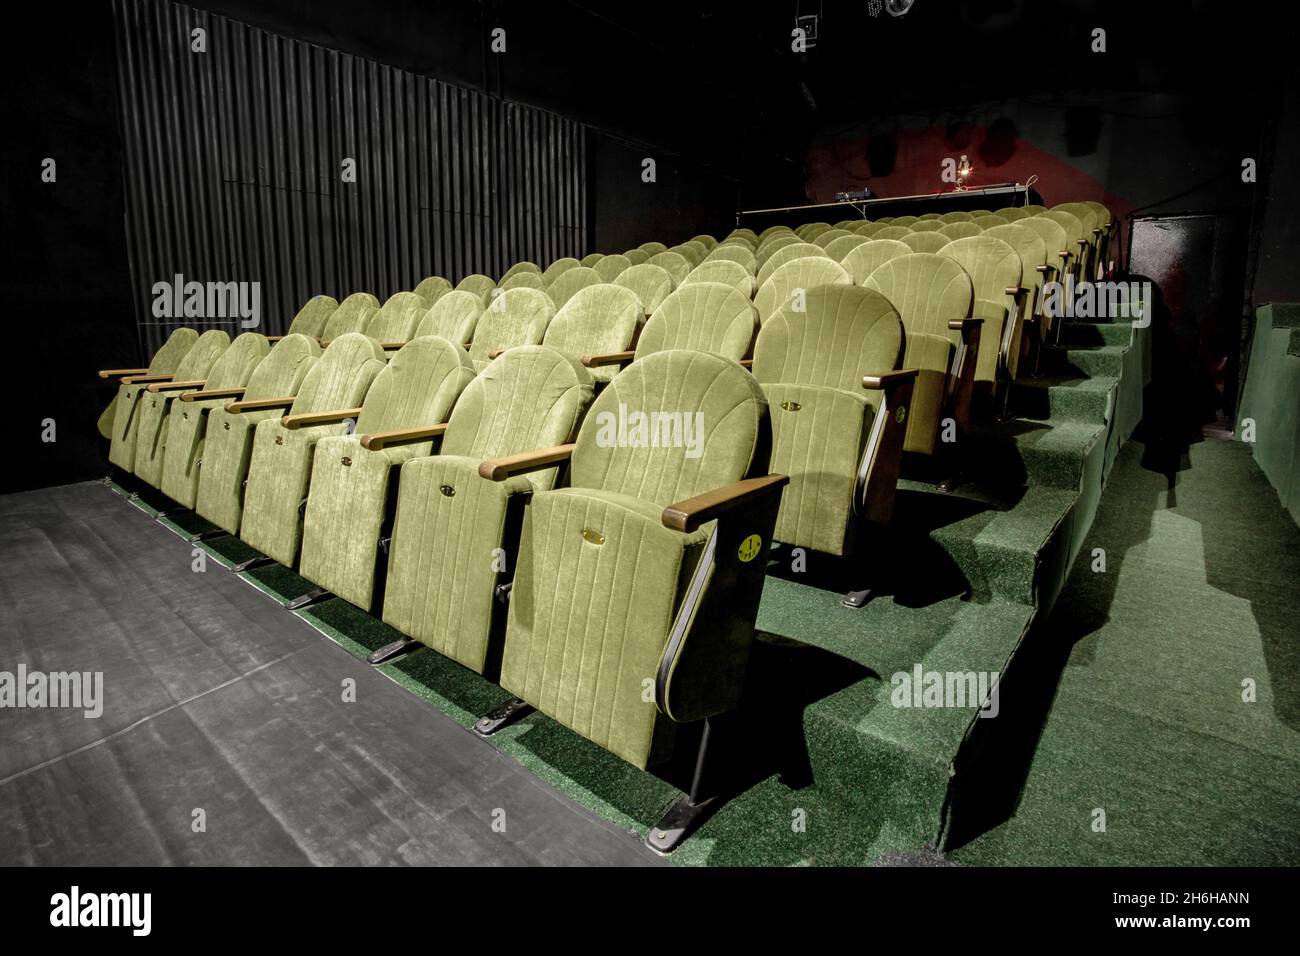 Image d'un petit auditorium avec fauteuils verts Banque D'Images